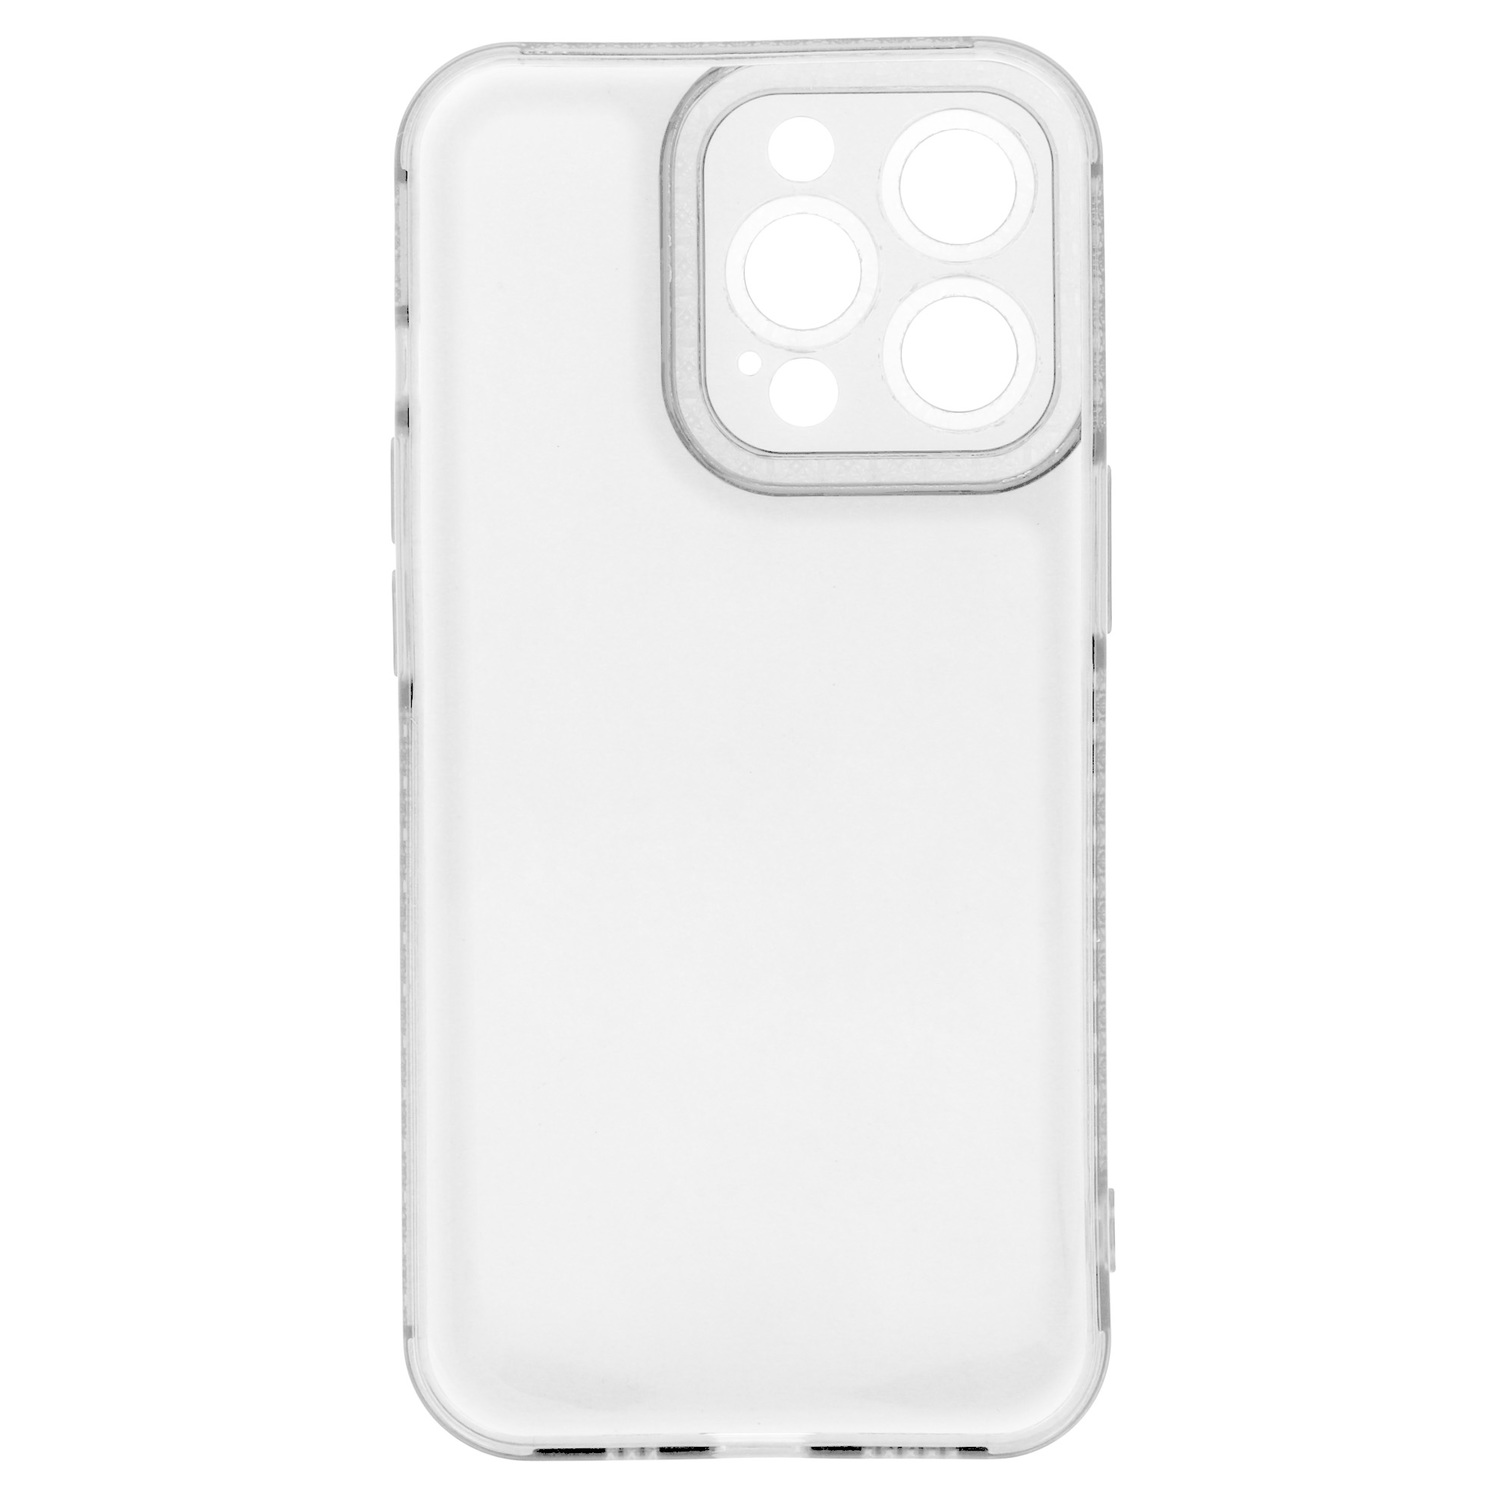 Pokrowiec etui silikonowe Crystal Diamond Case przezroczyste APPLE iPhone SE 2022 / 5